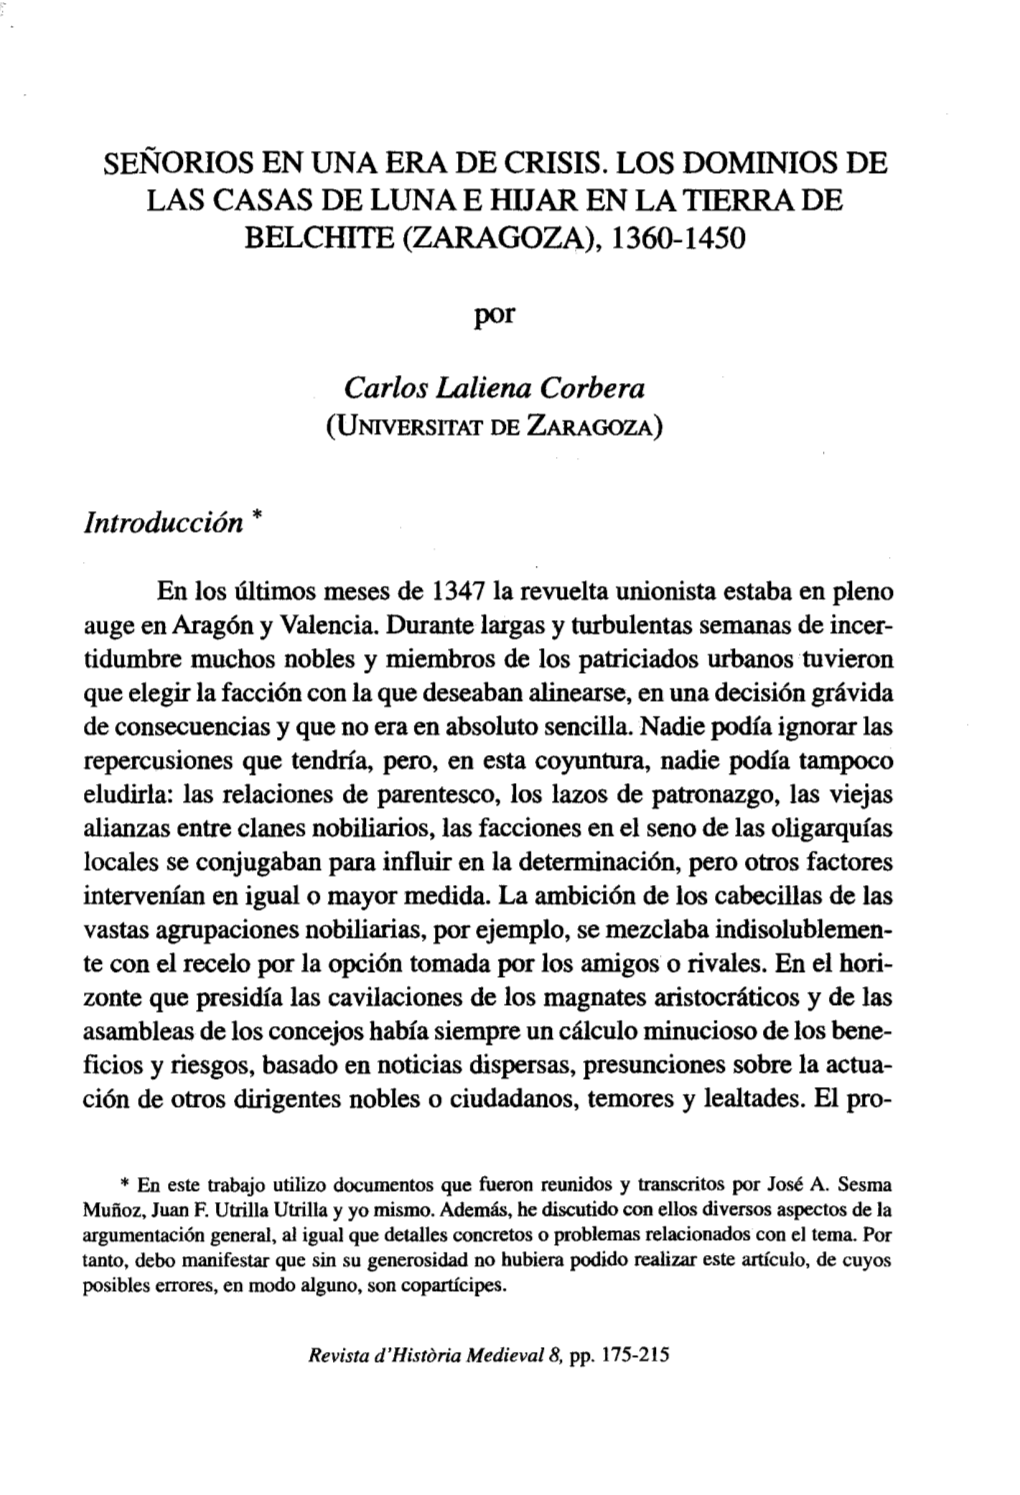 Señorios En Una Era De Crisis. Los Dominios De Las Casas De Luna E Huar En La Tierra De Belchite (Zaragoza), 1360-1450